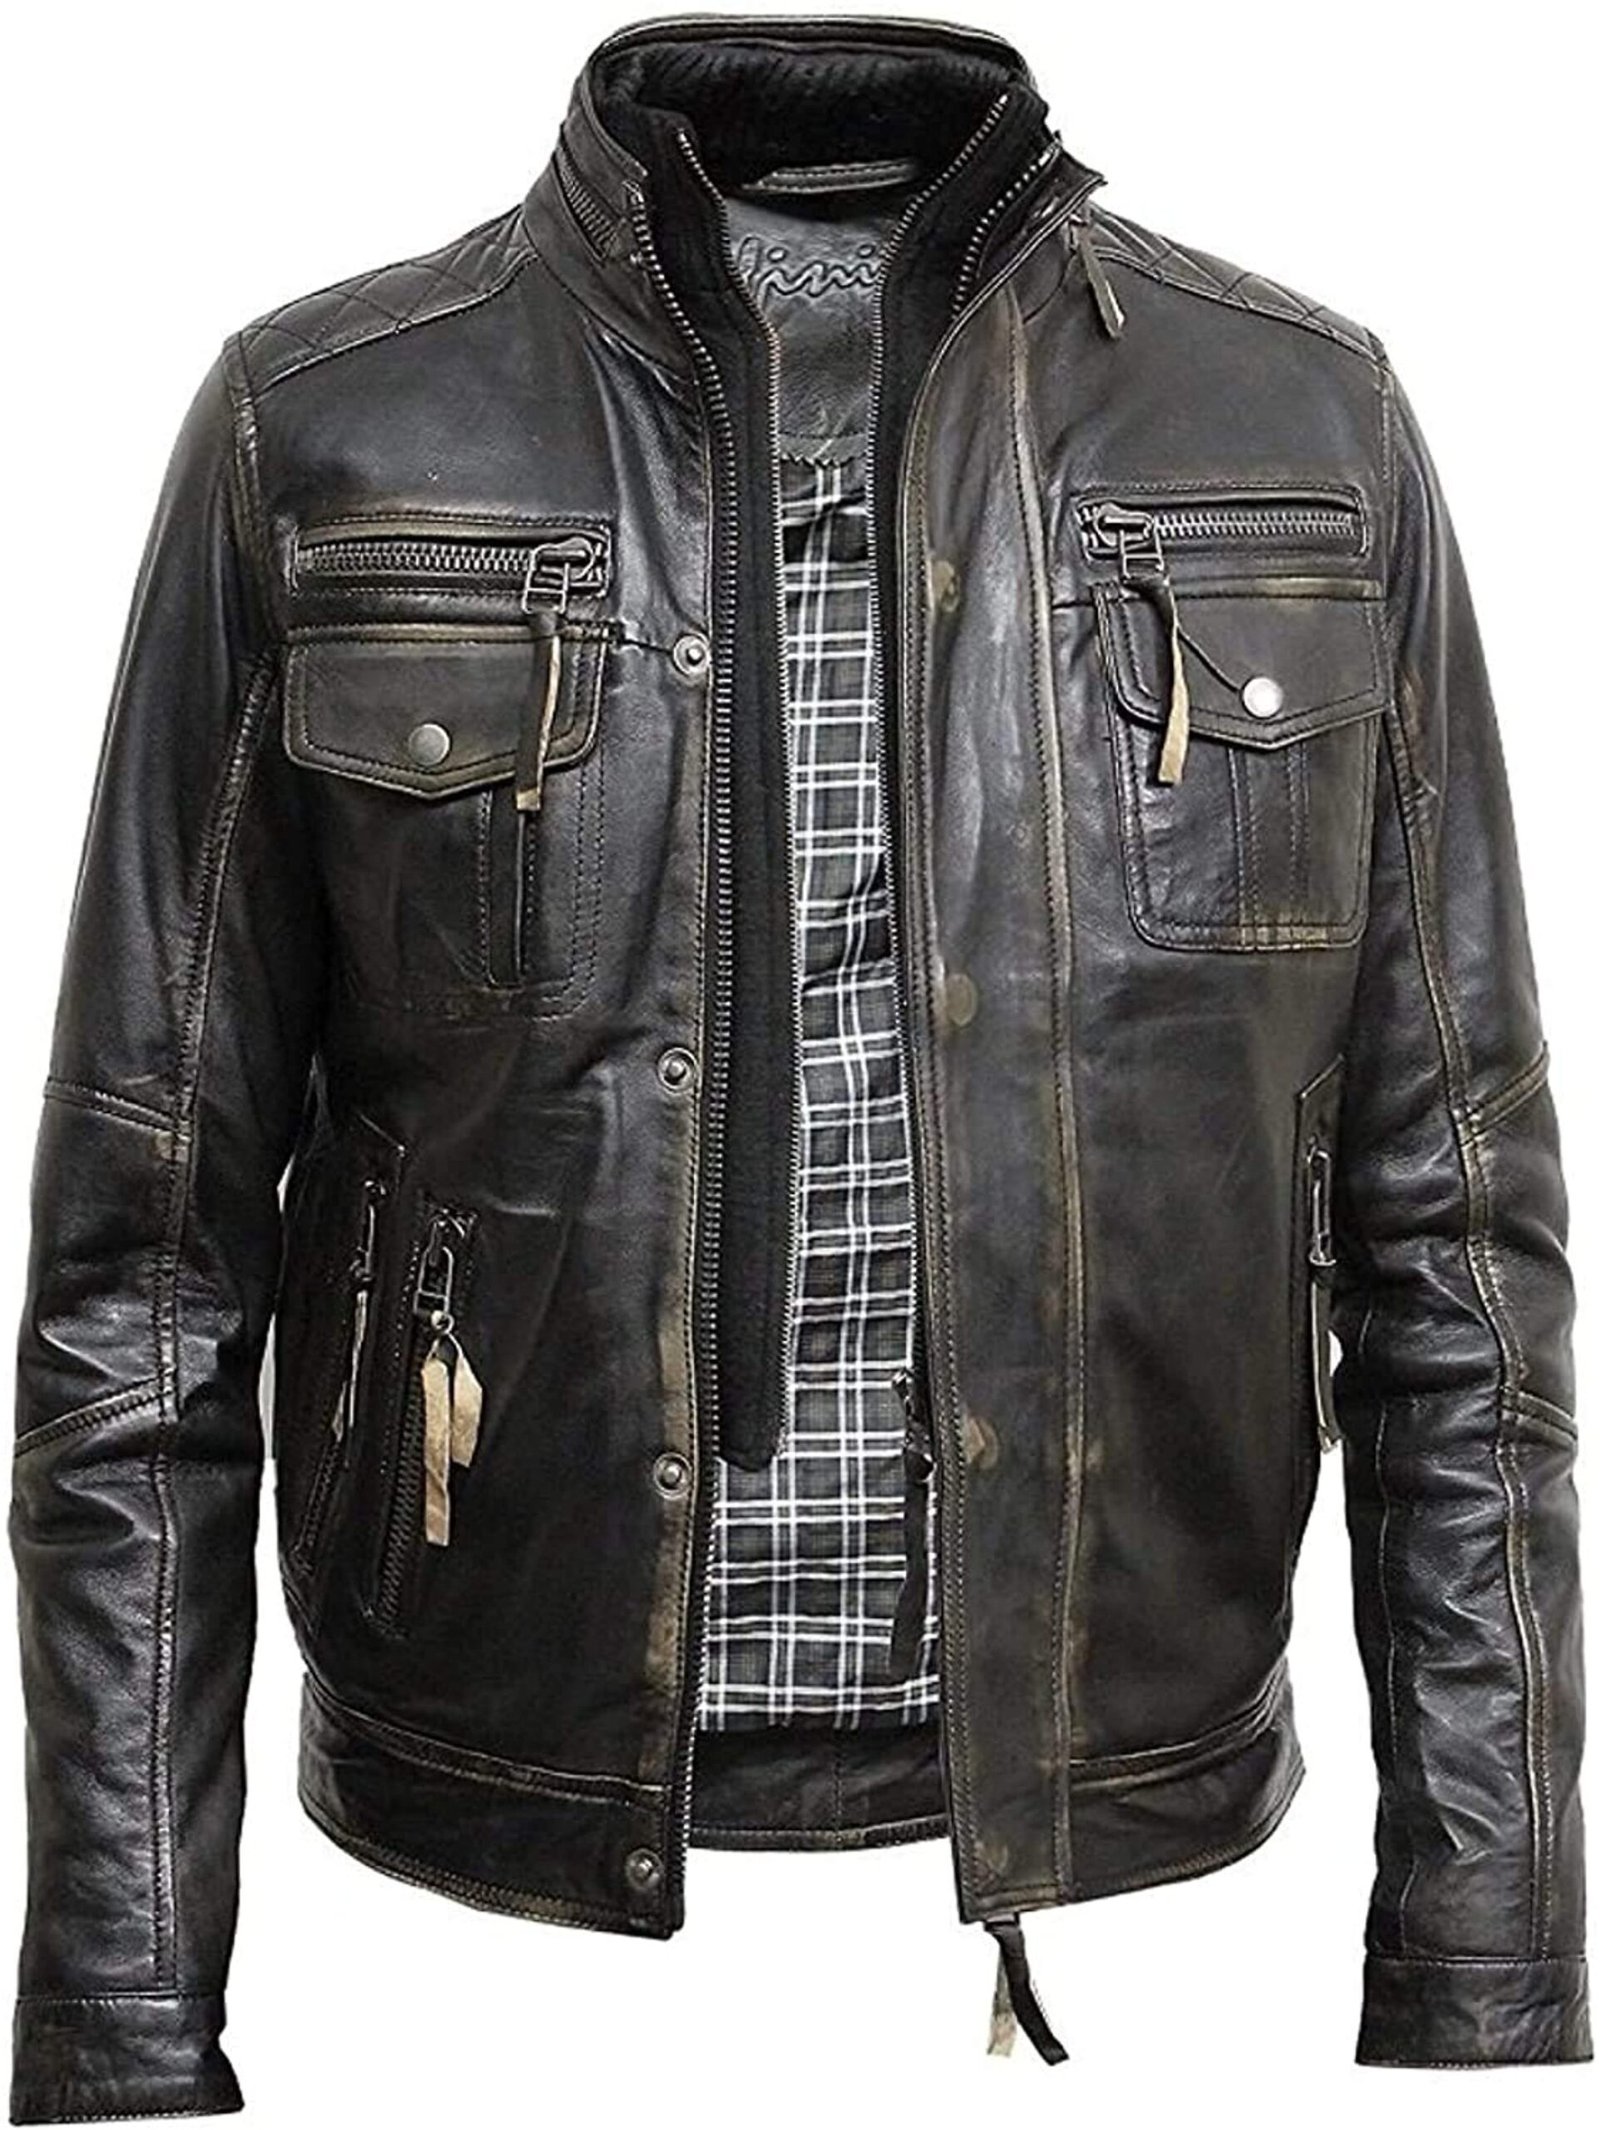 Distressed Motorcycle Vintage Black Leather Jacket